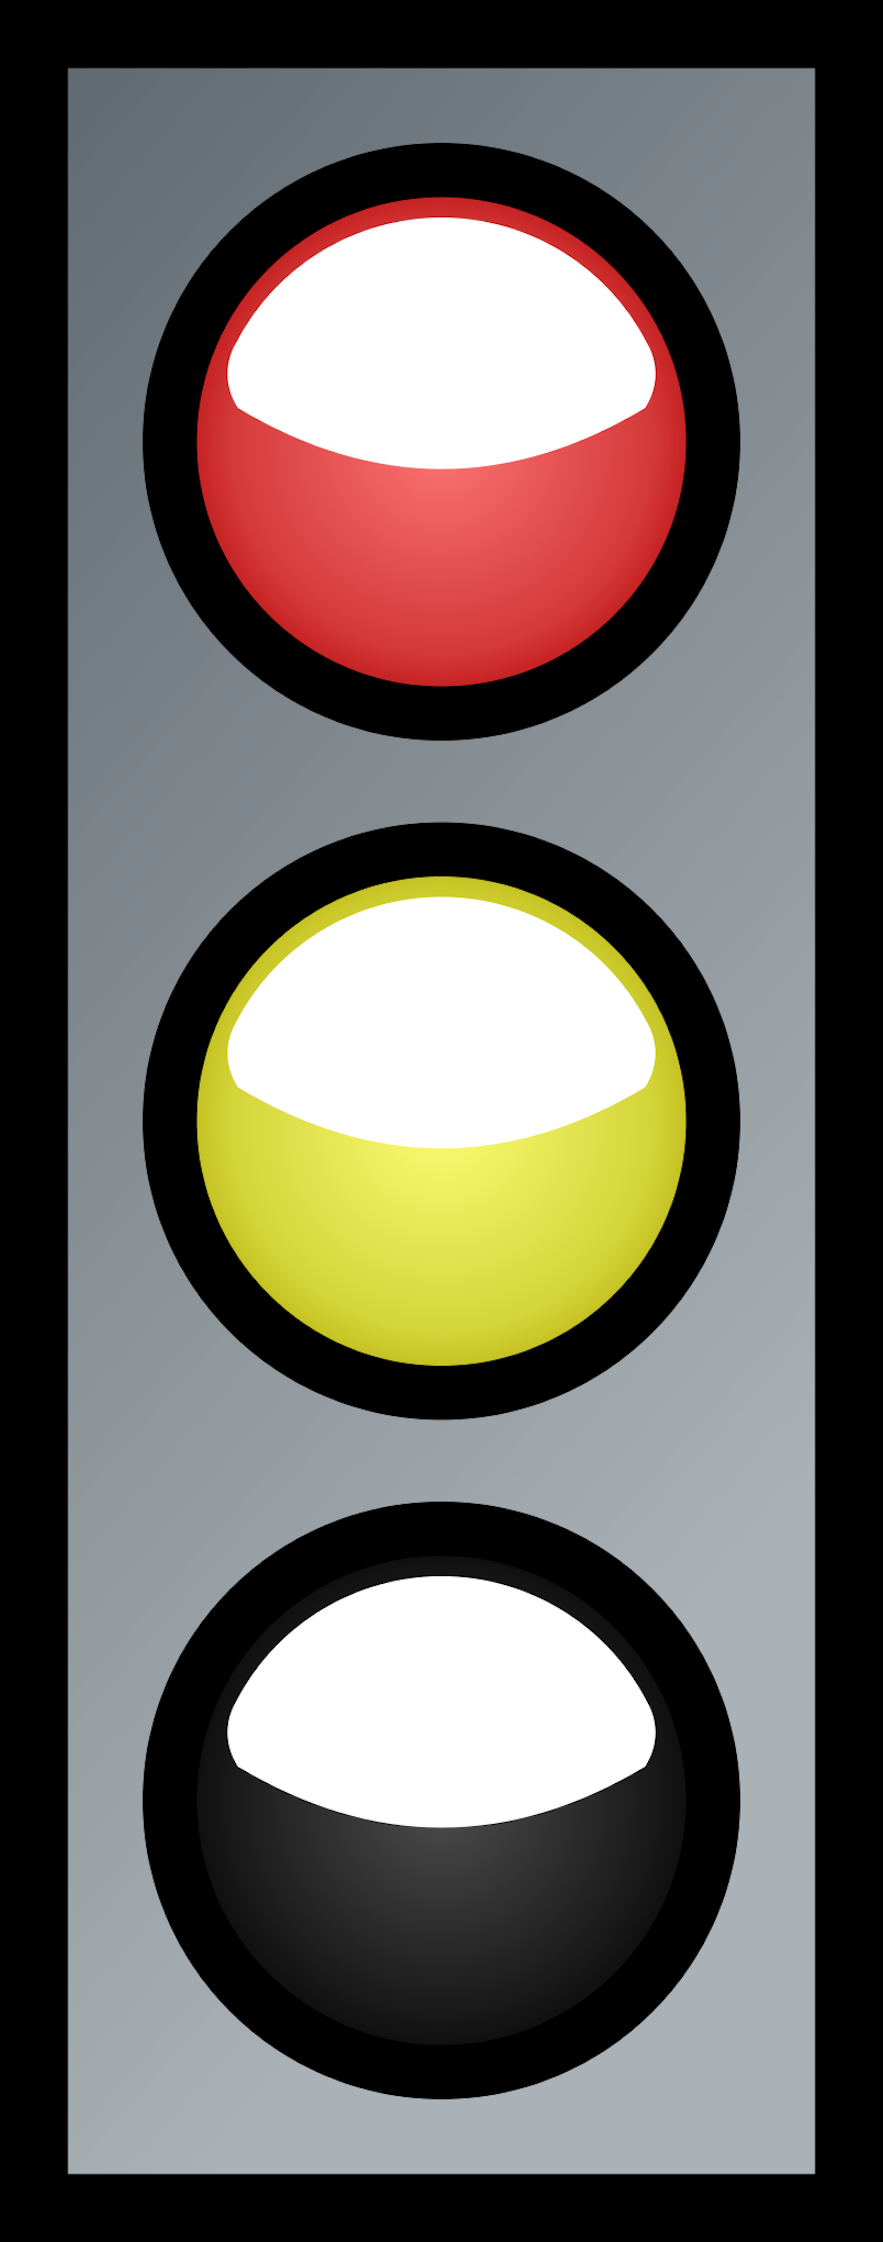 在冰岛，黄灯和红灯同时亮表示信号灯即将变绿，您可以准备出发了。